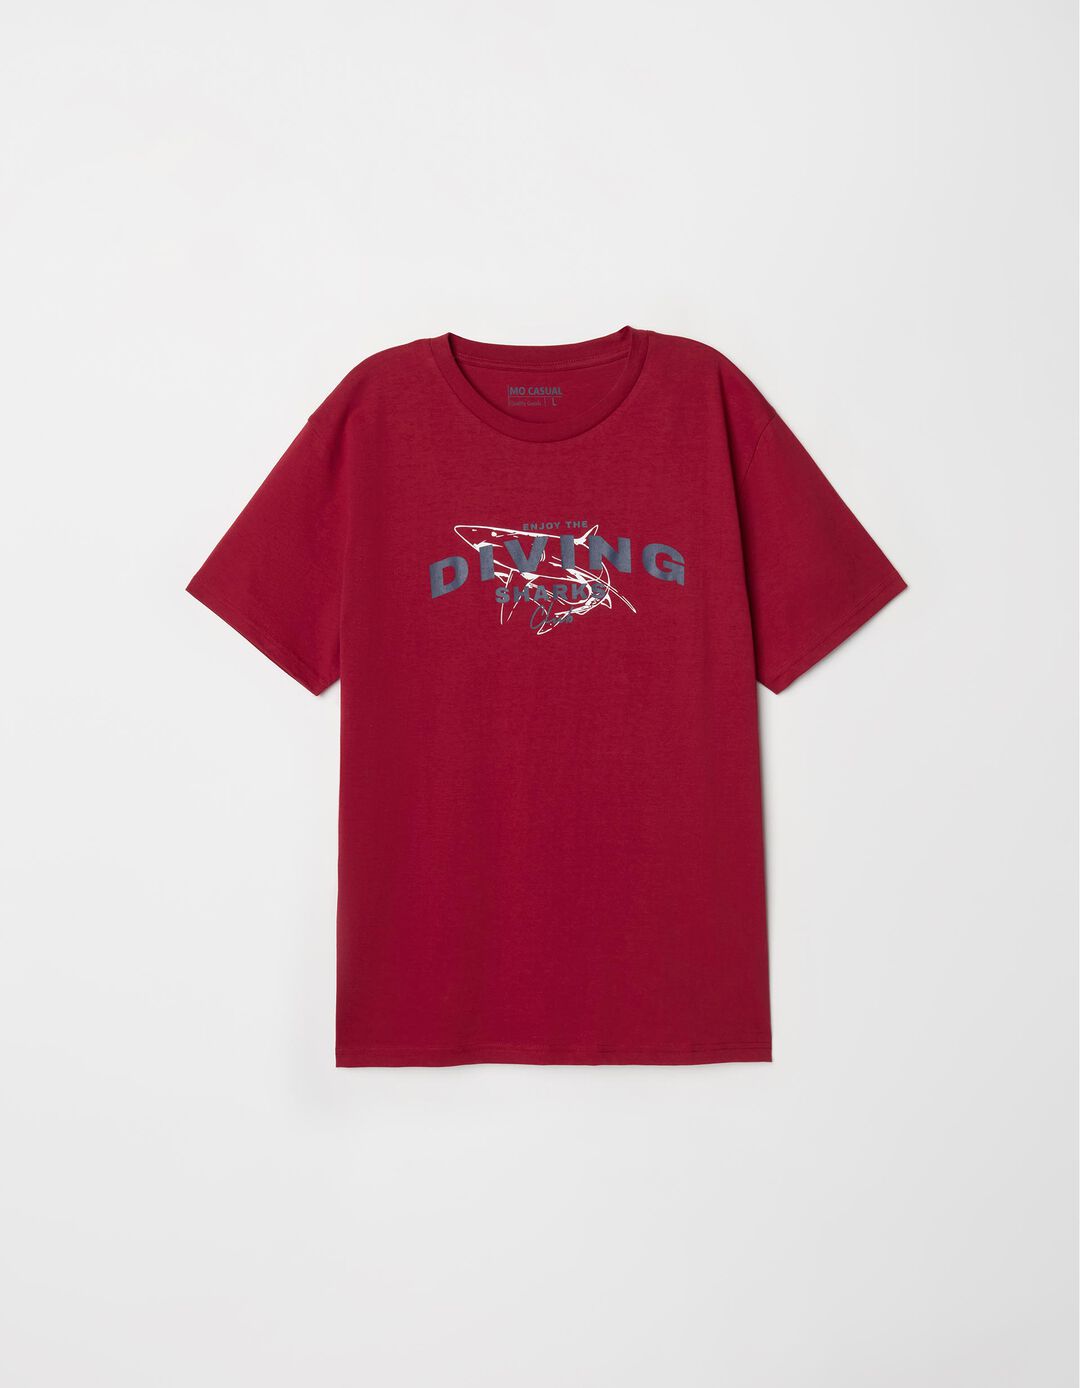 T-shirt Estampado, Homem, Vermelho Escuro